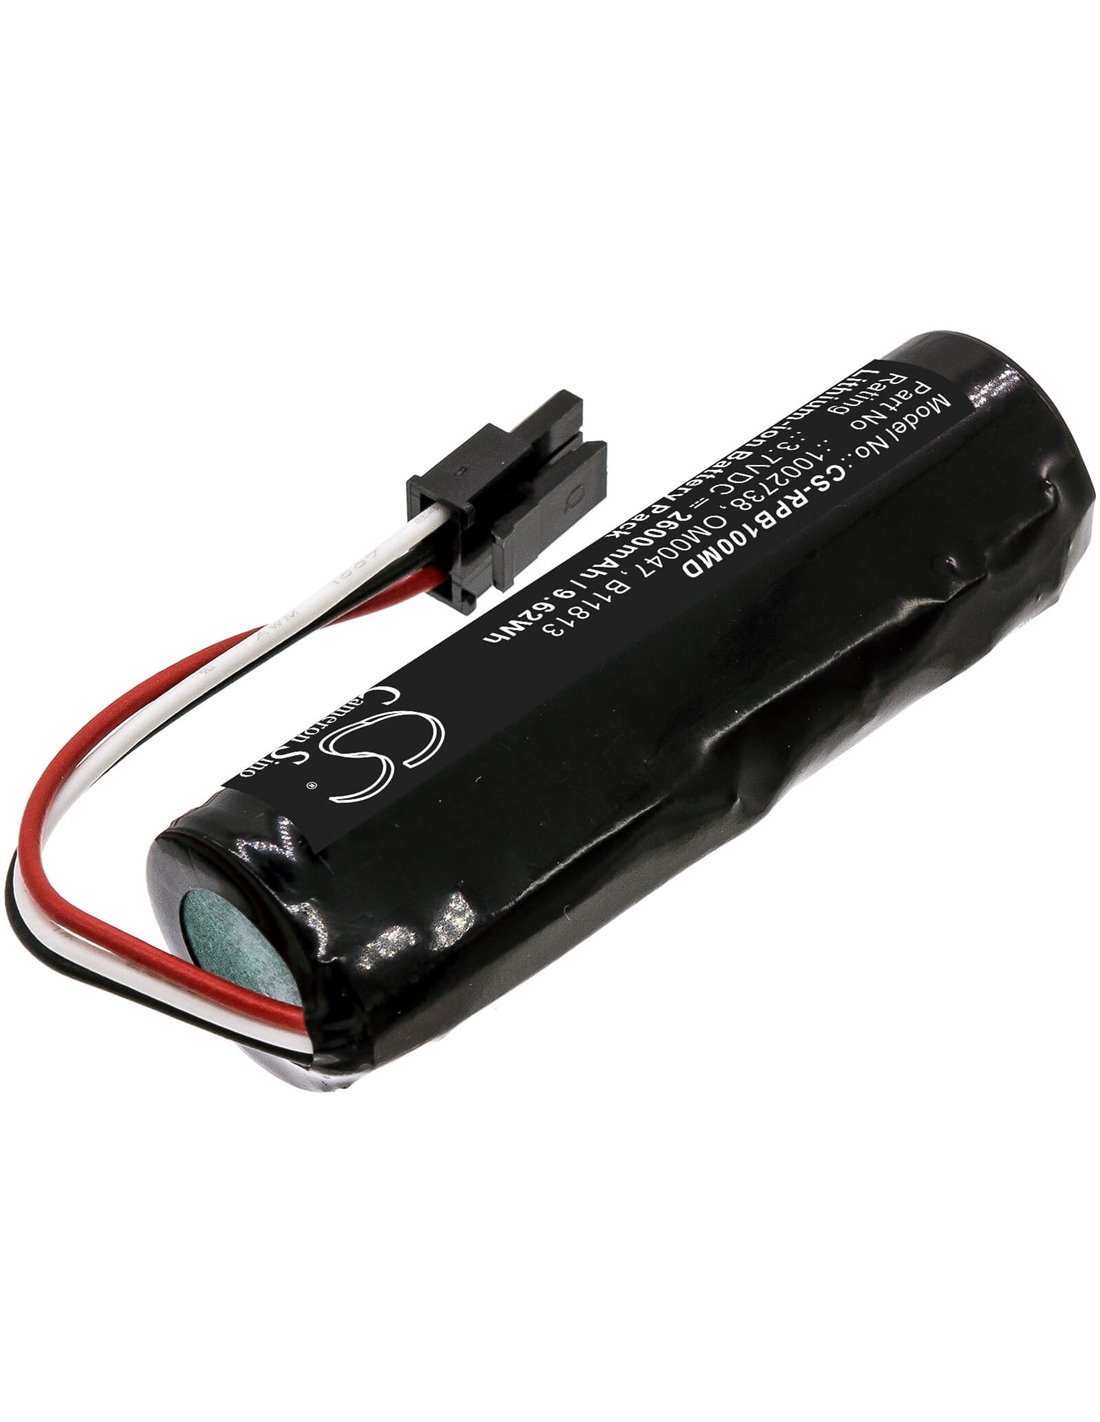 3.7V, 2600mAh, Li-ion Battery fits Respironics, Bilichek Noninvasive Bilirubin, 9.62Wh